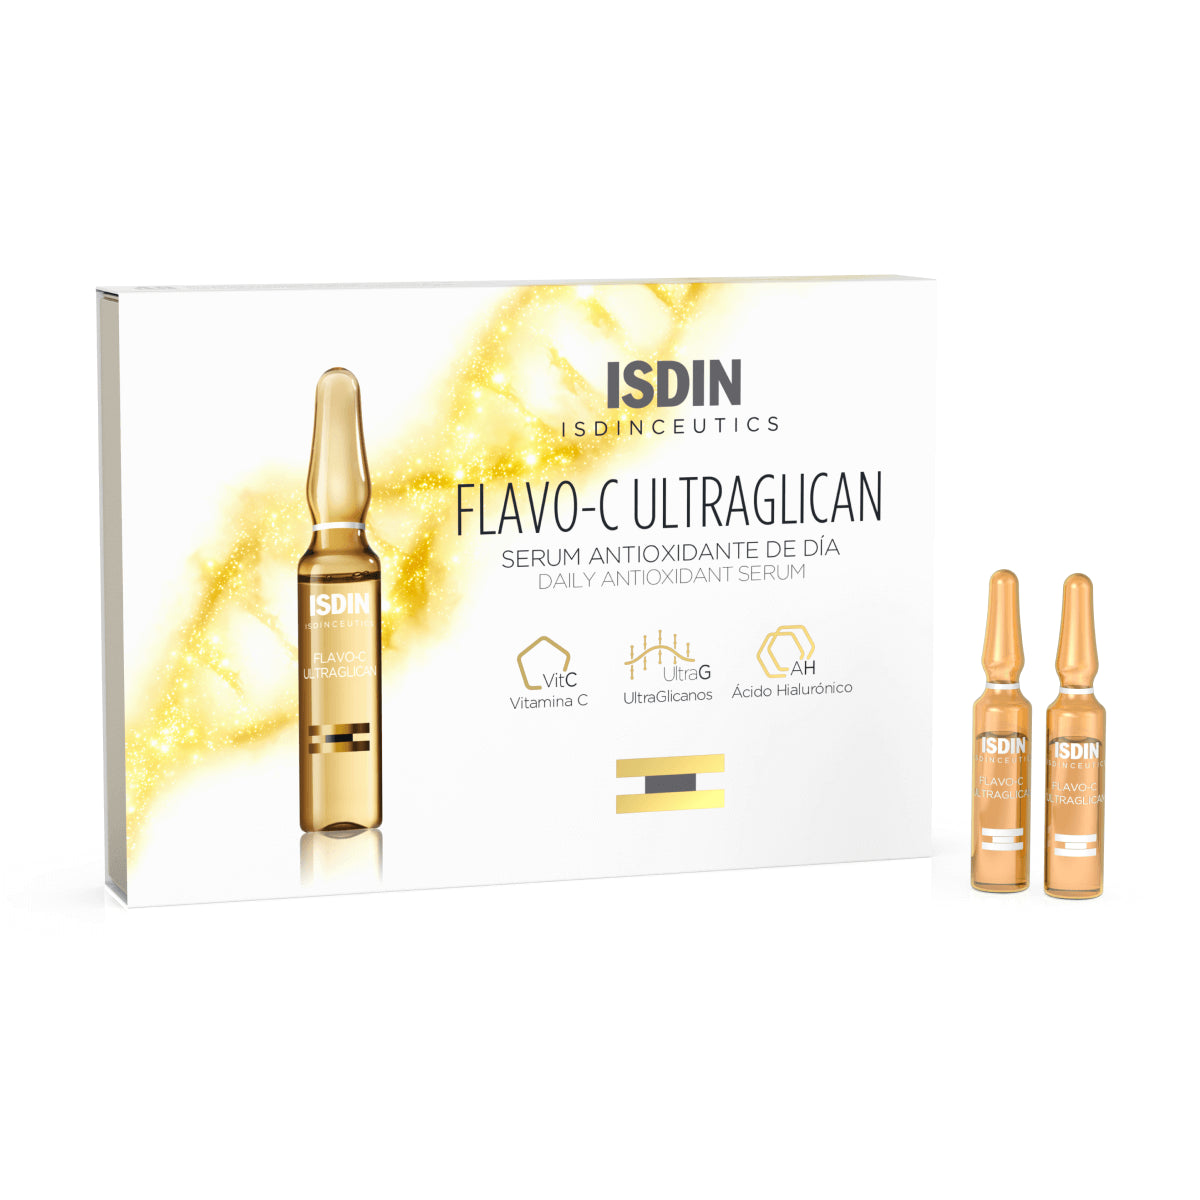 ISDIN Isdinceutics Flavo-C Ultraglican 10 ampoules